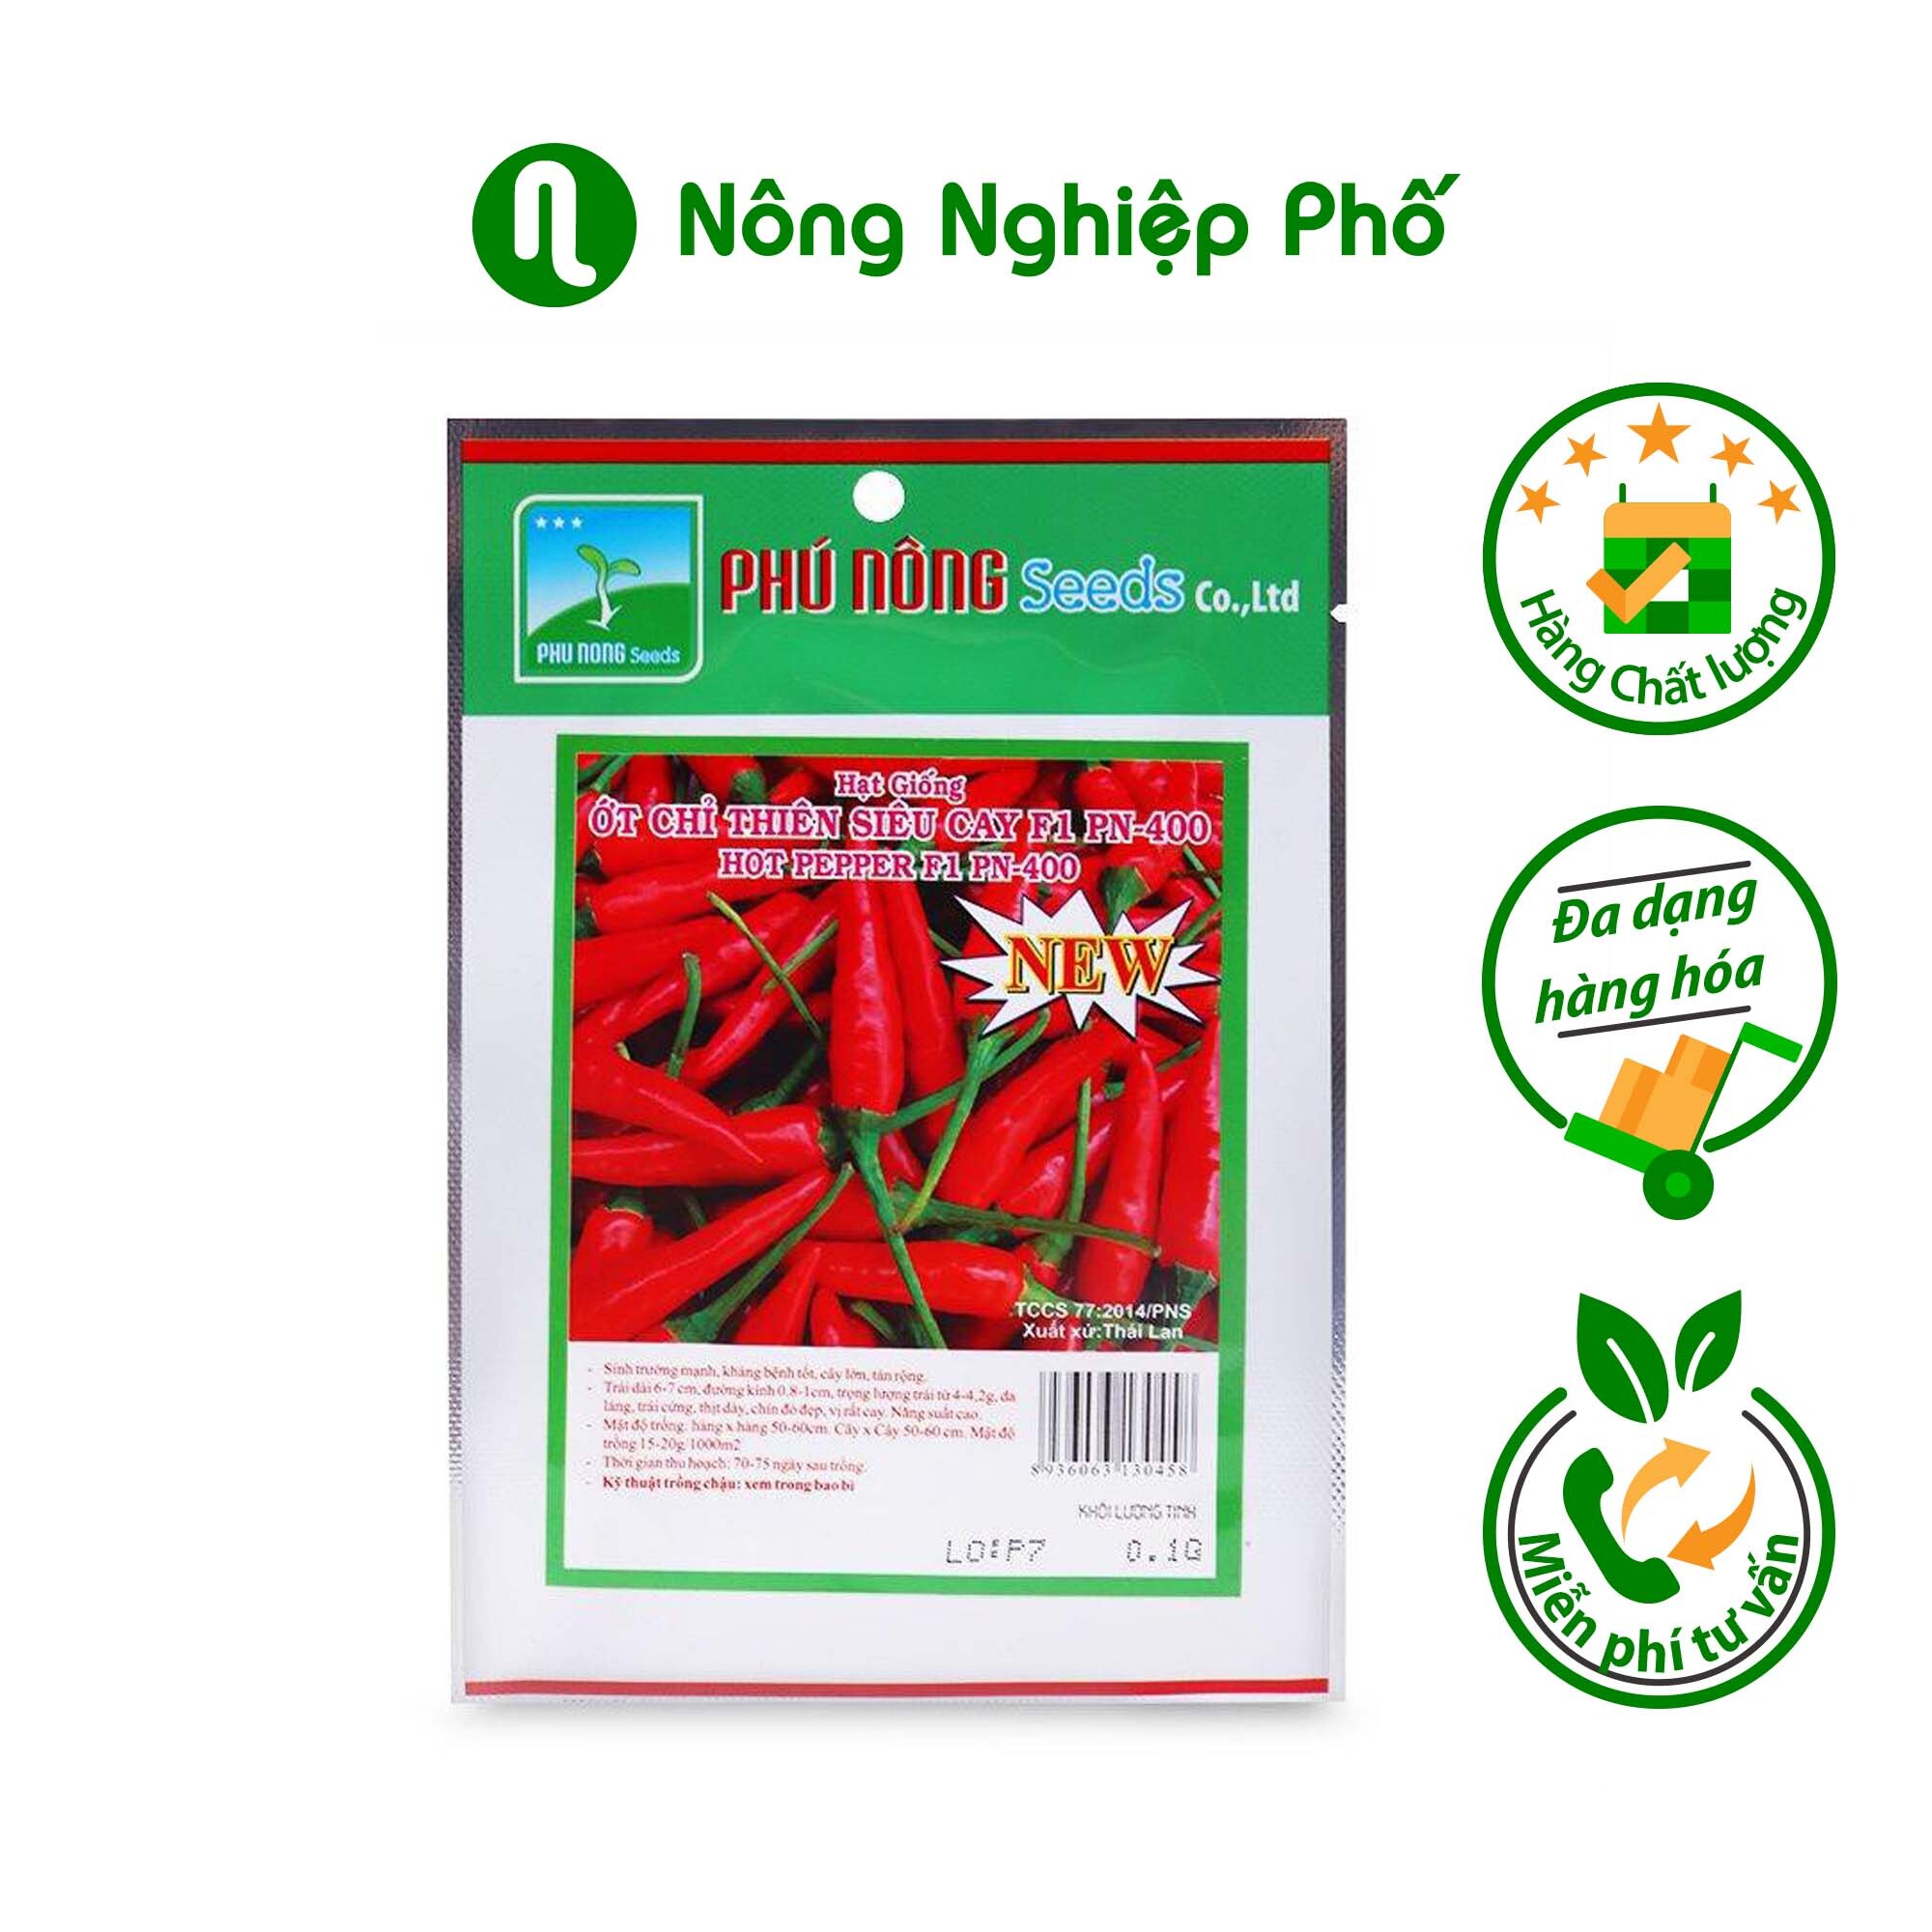 Hạt giống ớt chỉ thiên siêu cay F1 Phú Nông PN-400 gói 0,1g